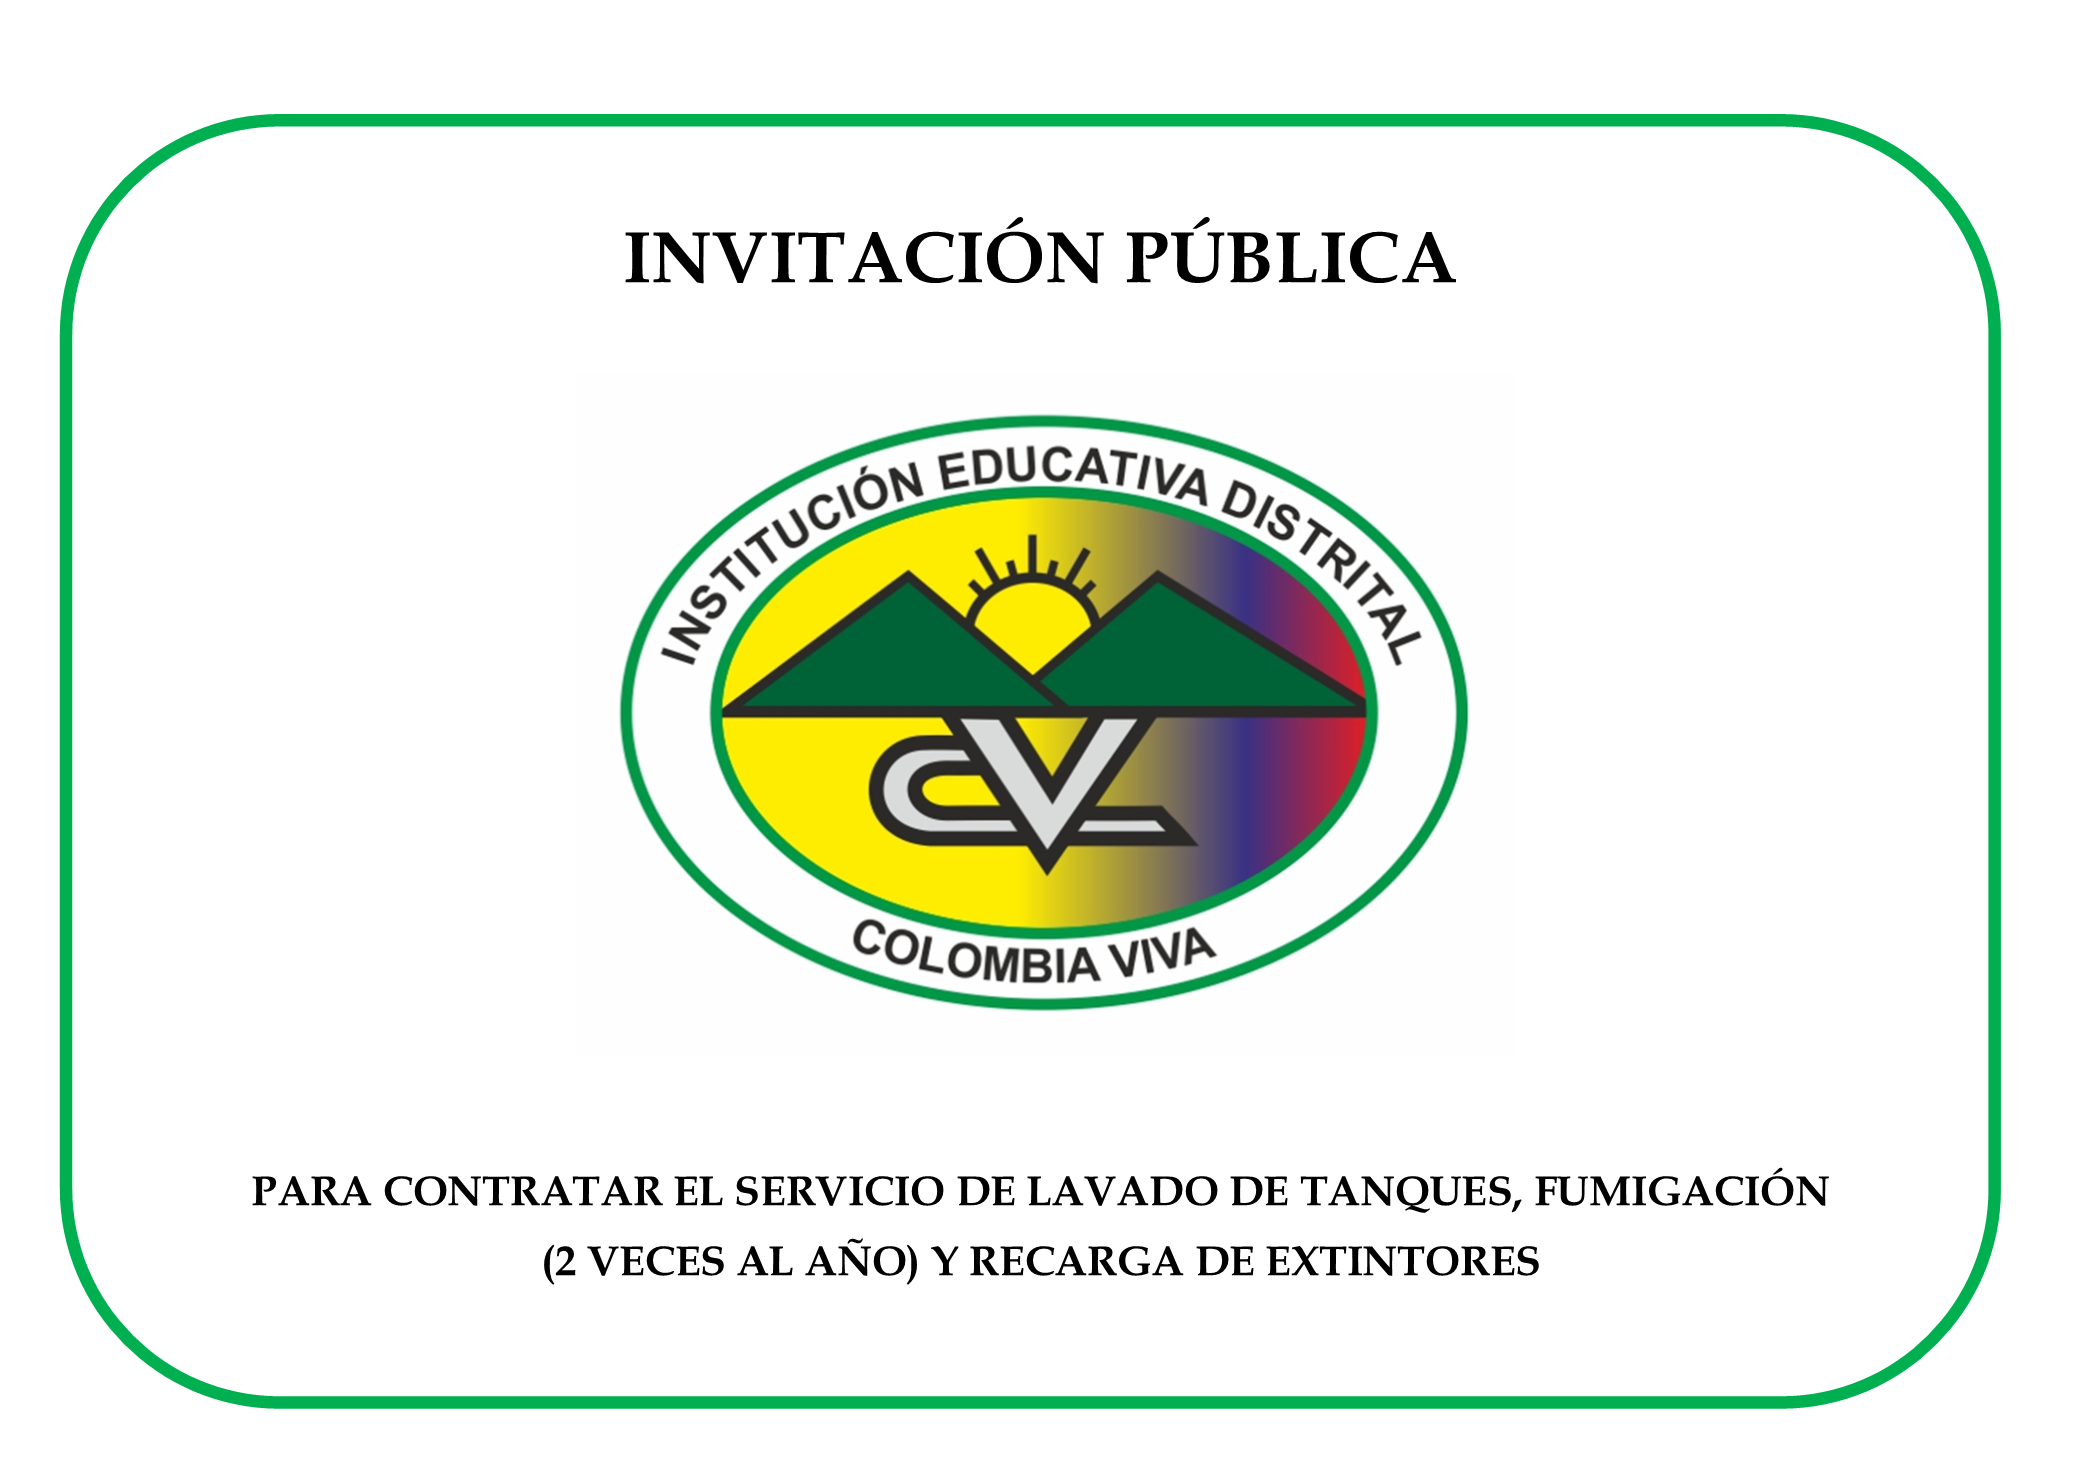 INVITACIÓN PÚBLICA PARA CONTRATAR EL SERVICIO DE LAVADO DE TANQUES, FUMIGACIÓN (2 VECES AL AÑO) Y RECARGA DE EXTINTORES